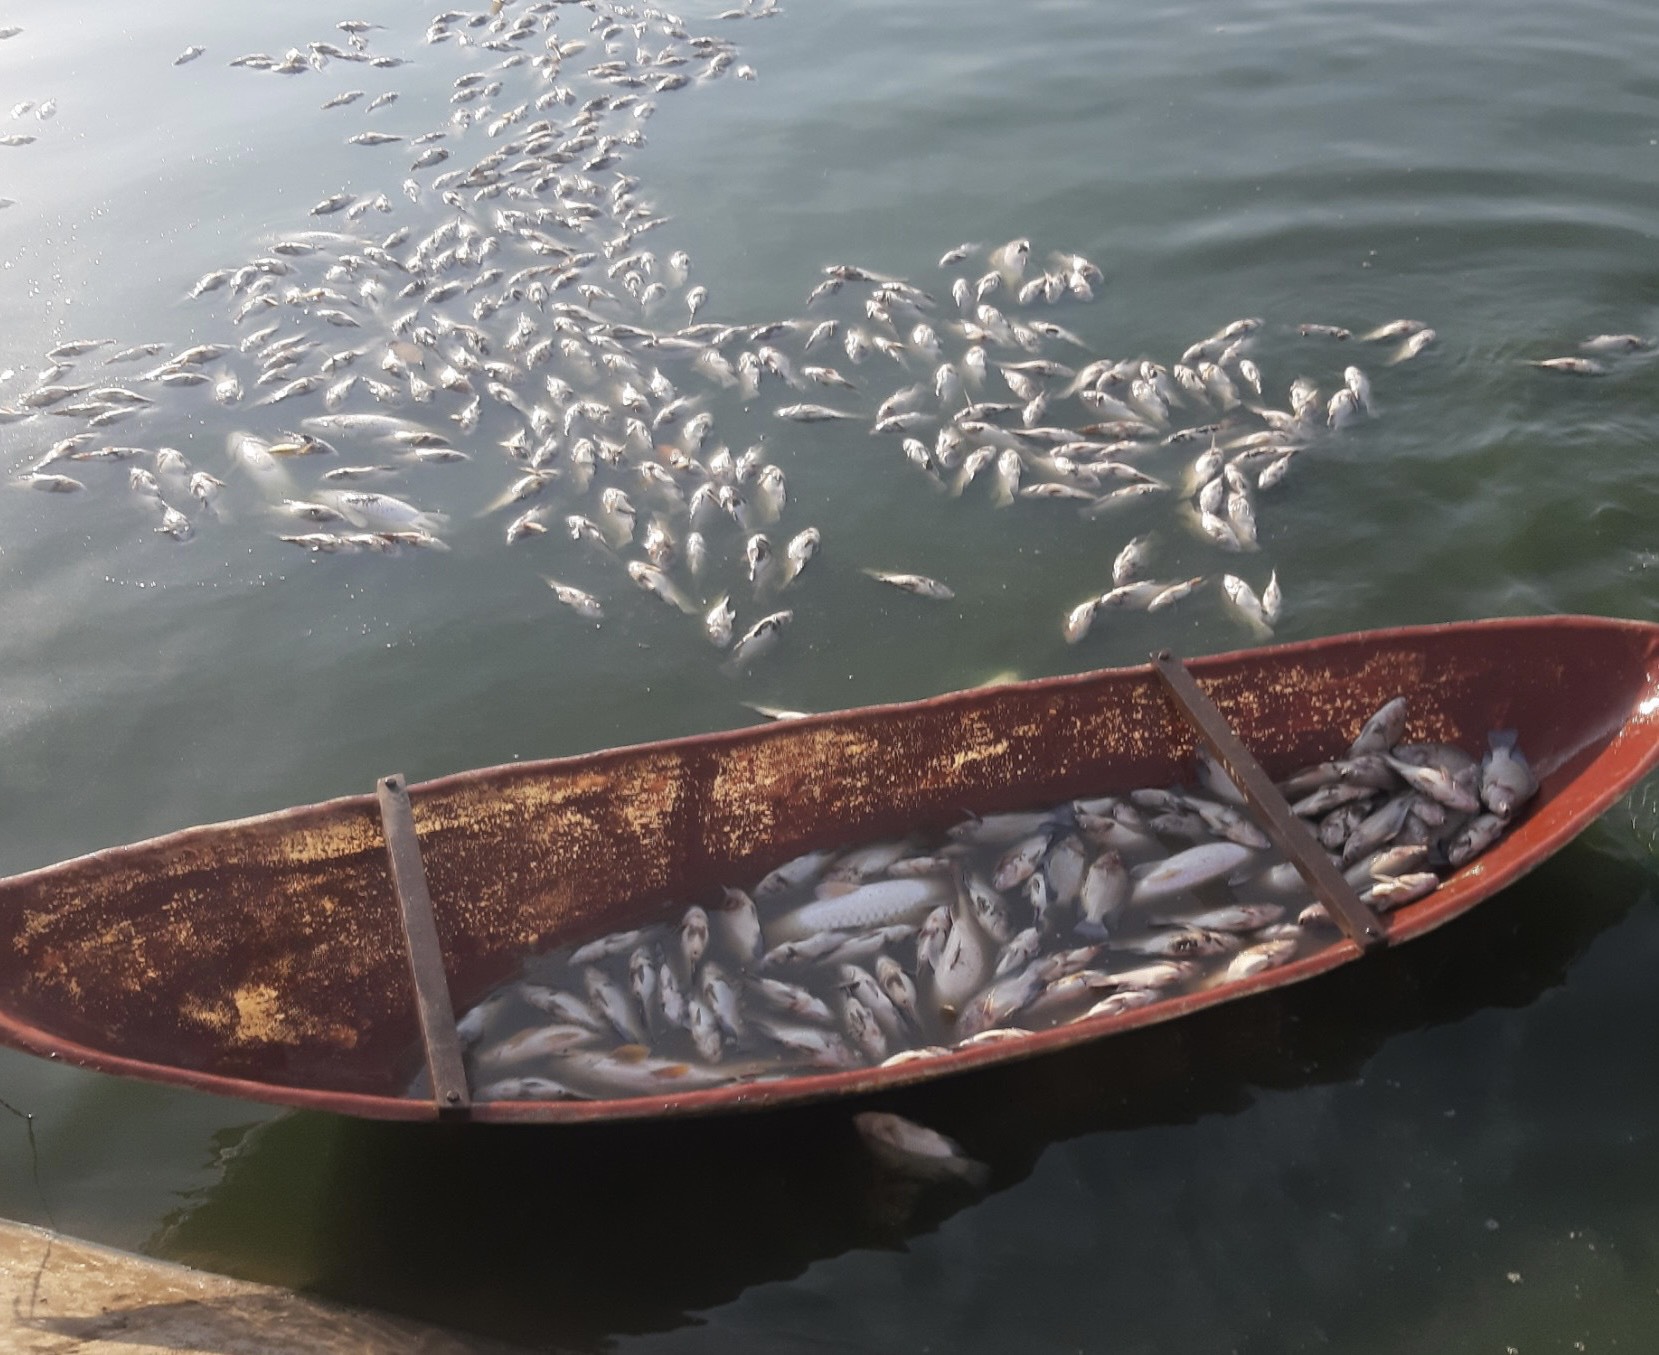 Cá chết do nắng nóng, nhiều hộ trong một HTX Thủy sản ở Hải Dương thiệt hại, chỉ biết kêu trời - Ảnh 2.